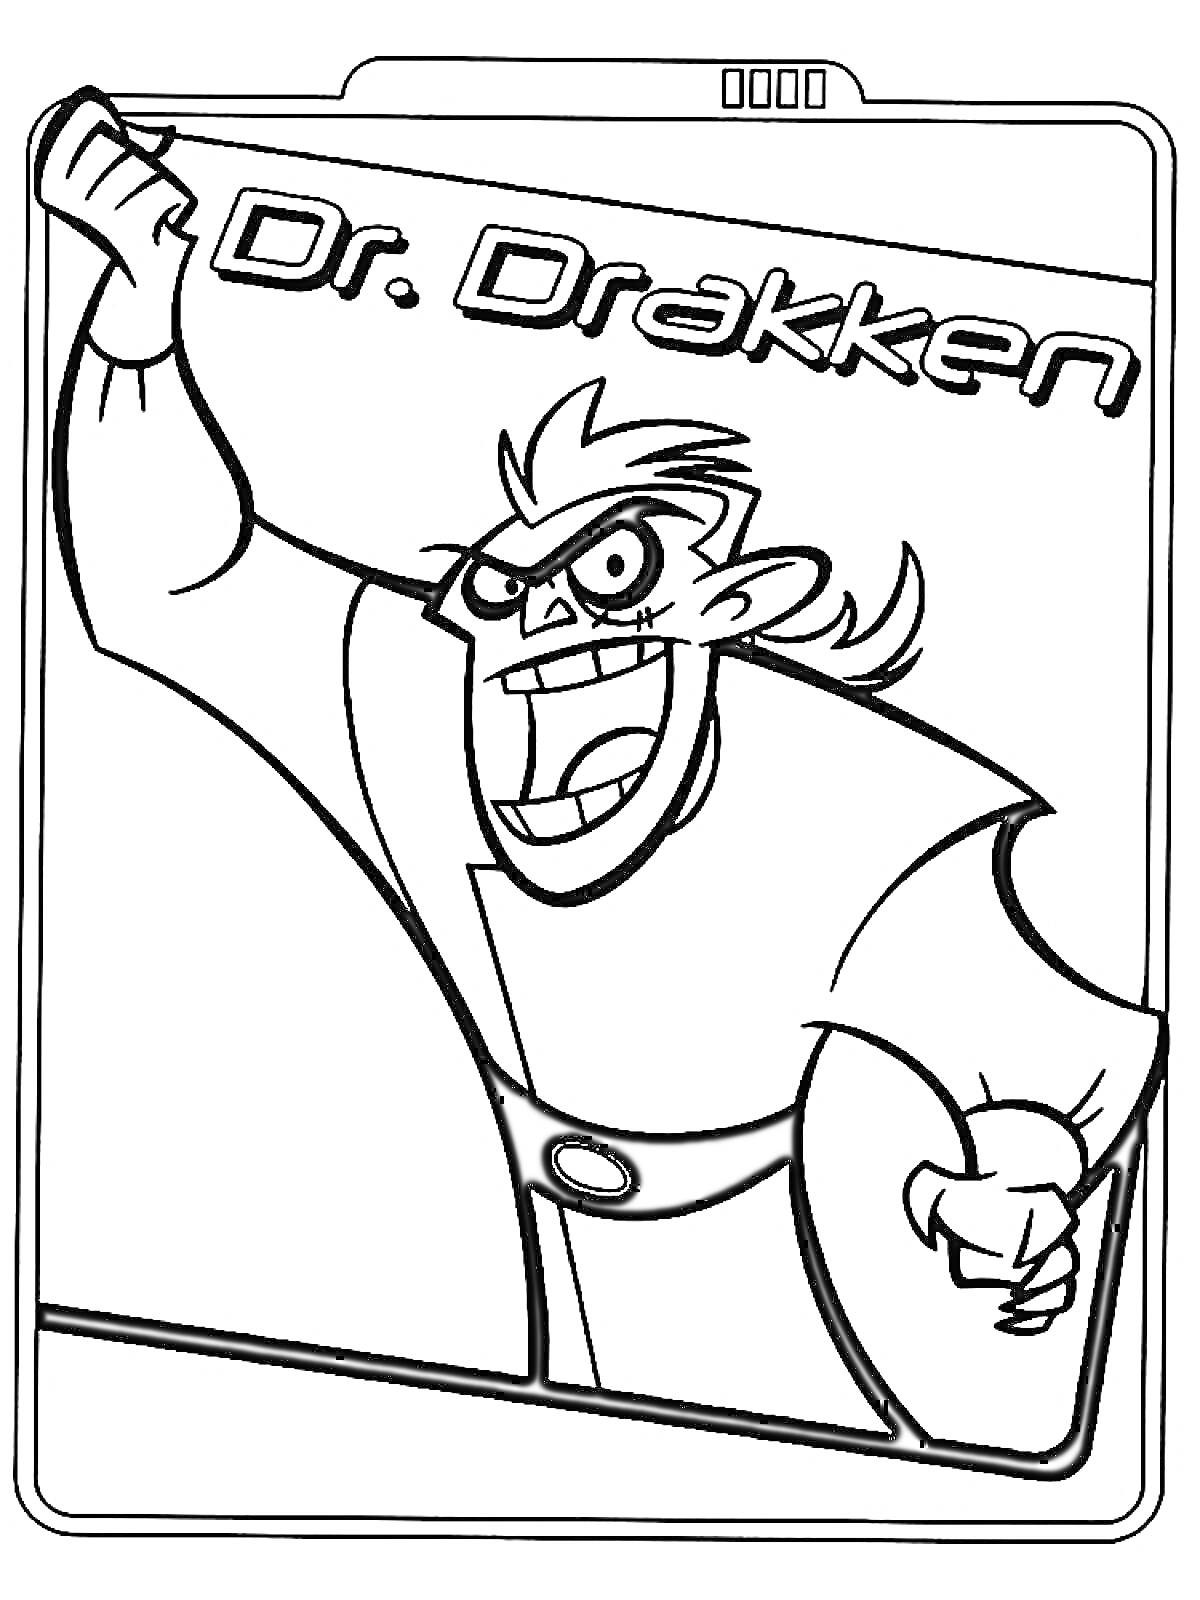 Раскраска Доктор Драккен с поднятой рукой на прямоугольной рамке